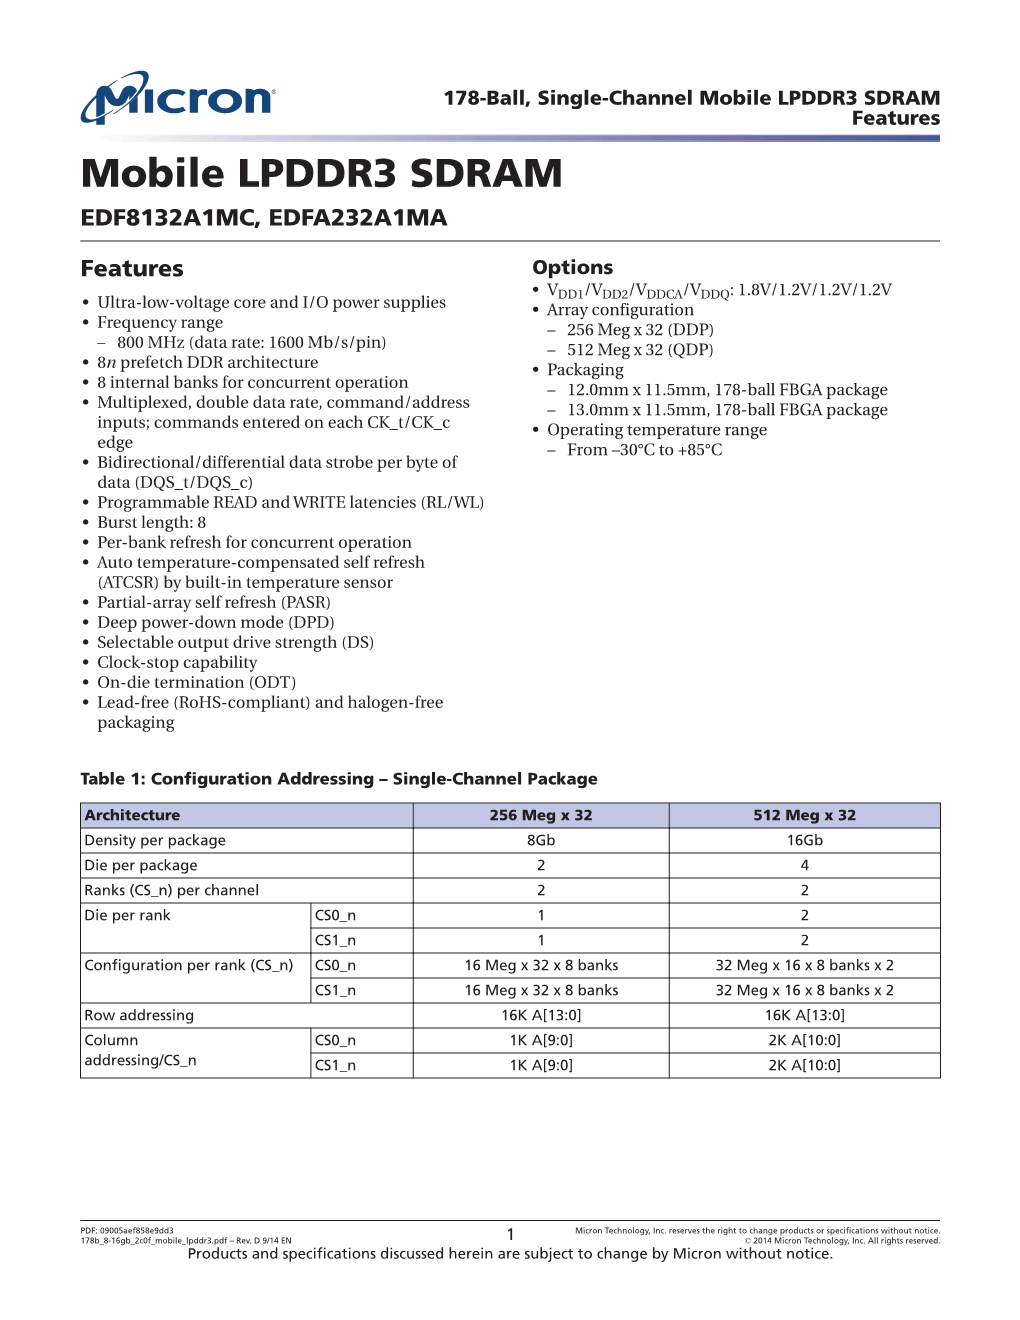 178-Ball, Single-Channel Mobile LPDDR3 SDRAM Features Mobile LPDDR3 SDRAM EDF8132A1MC, EDFA232A1MA